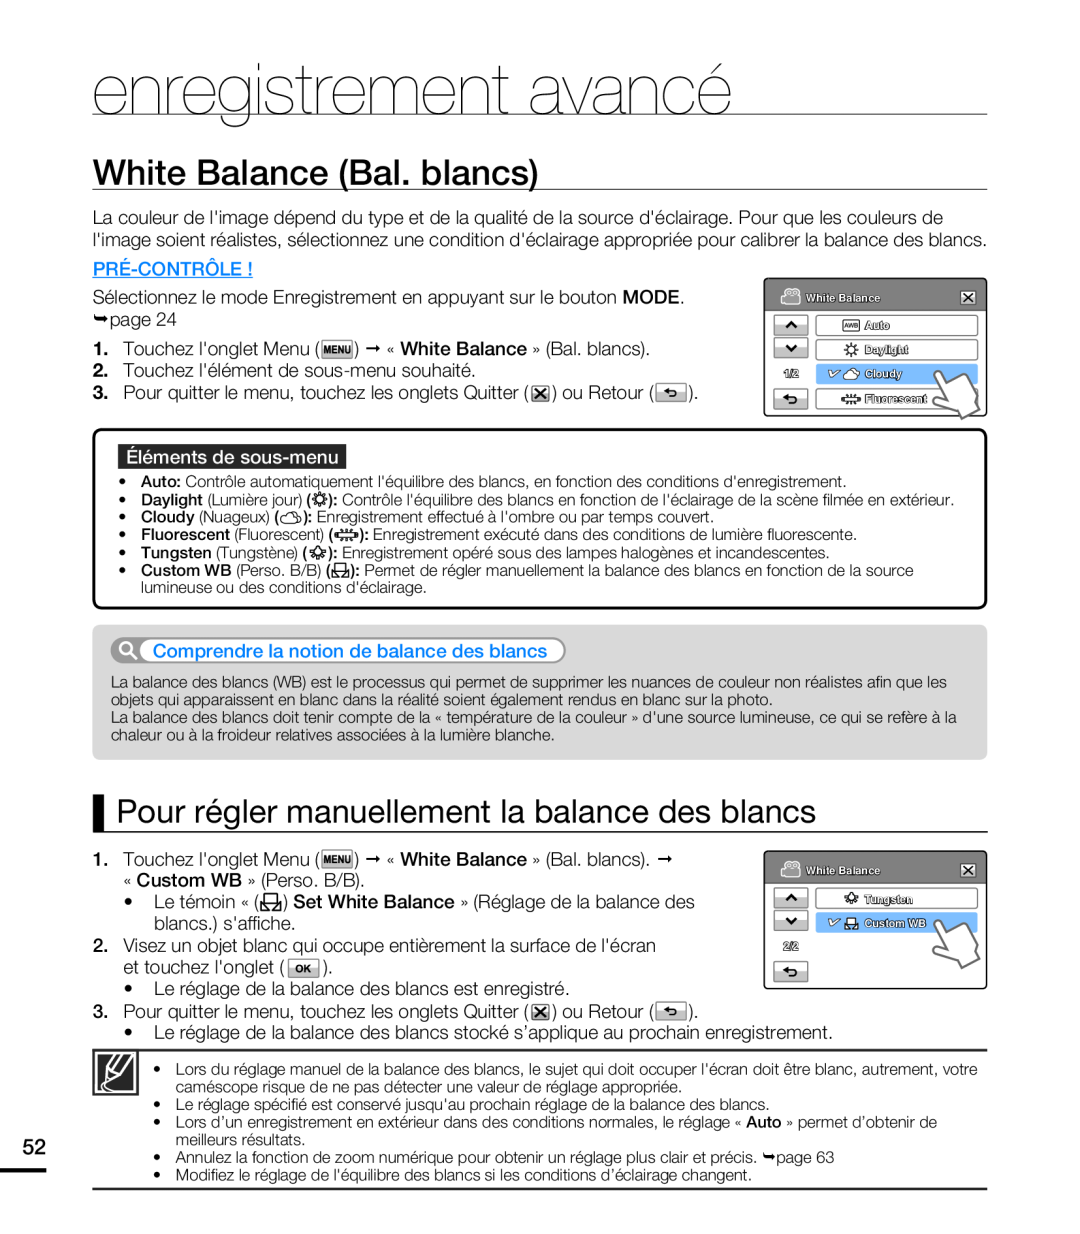 Samsung HMX-T10WP/XEU White Balance Bal. blancs, Pour régler manuellement la balance des blancs, enregistrement avancé 